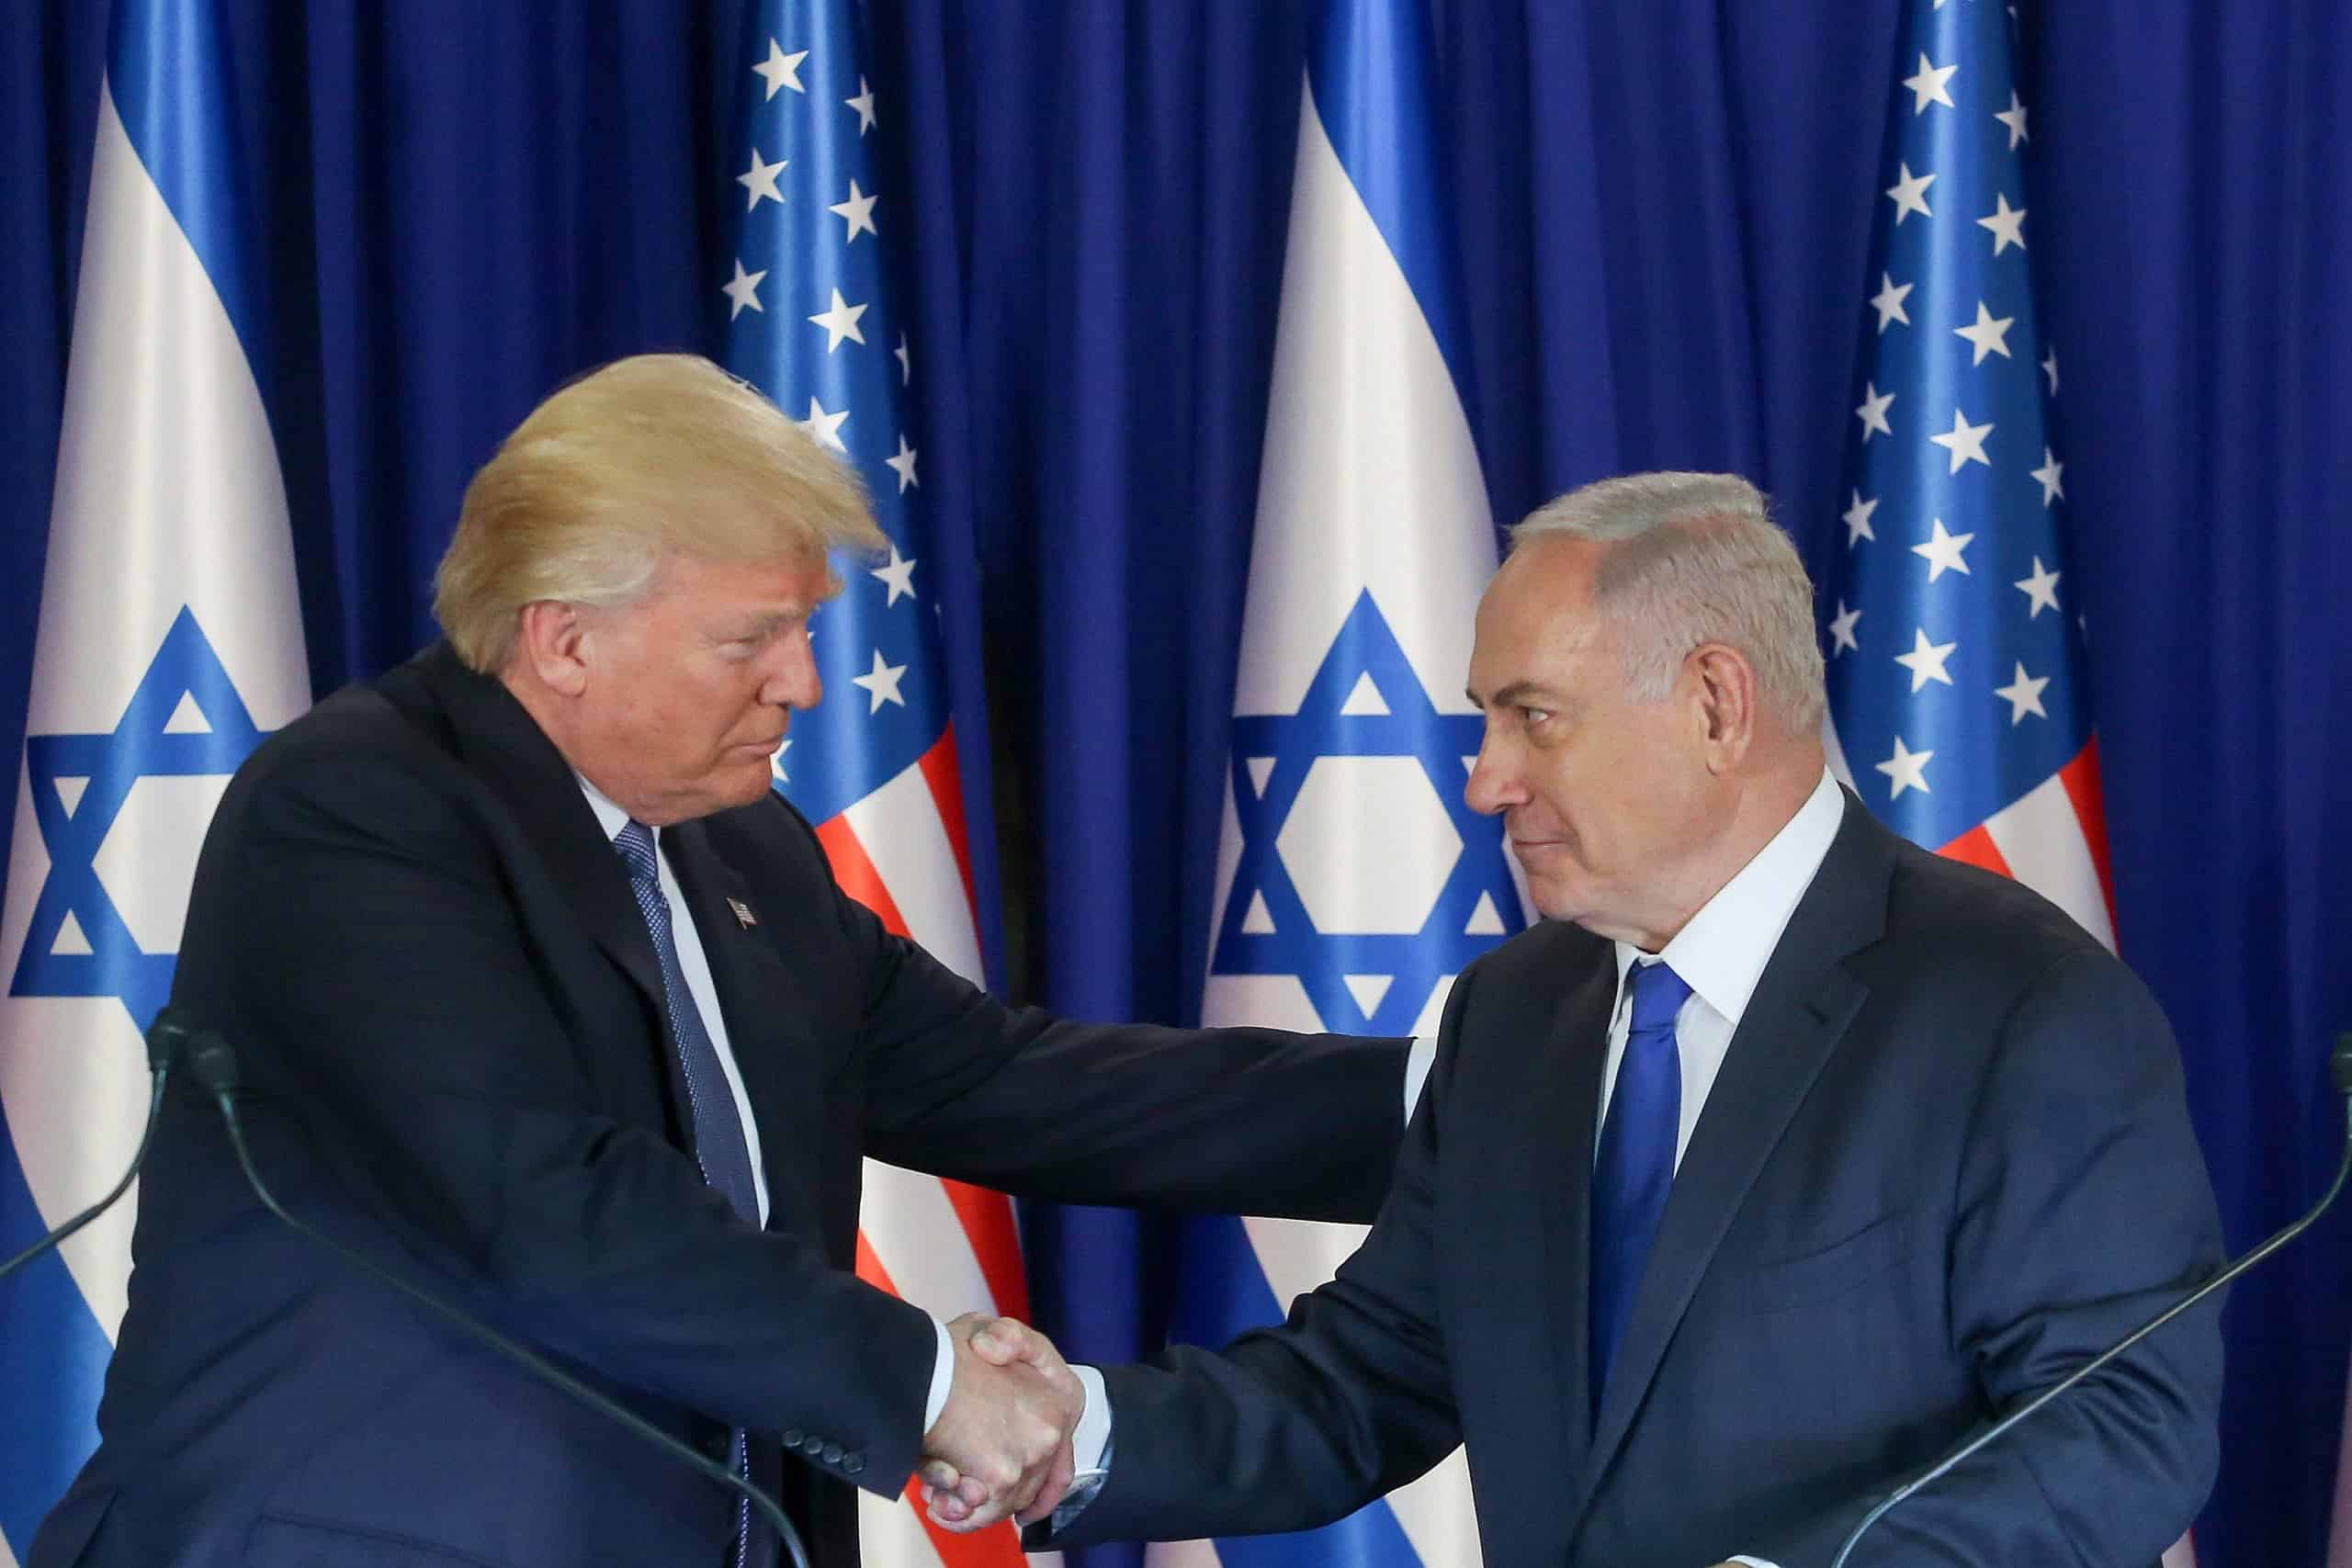 Trump-Netanyahu relationship ‘good’ ahead of Mar-a-Lago meet